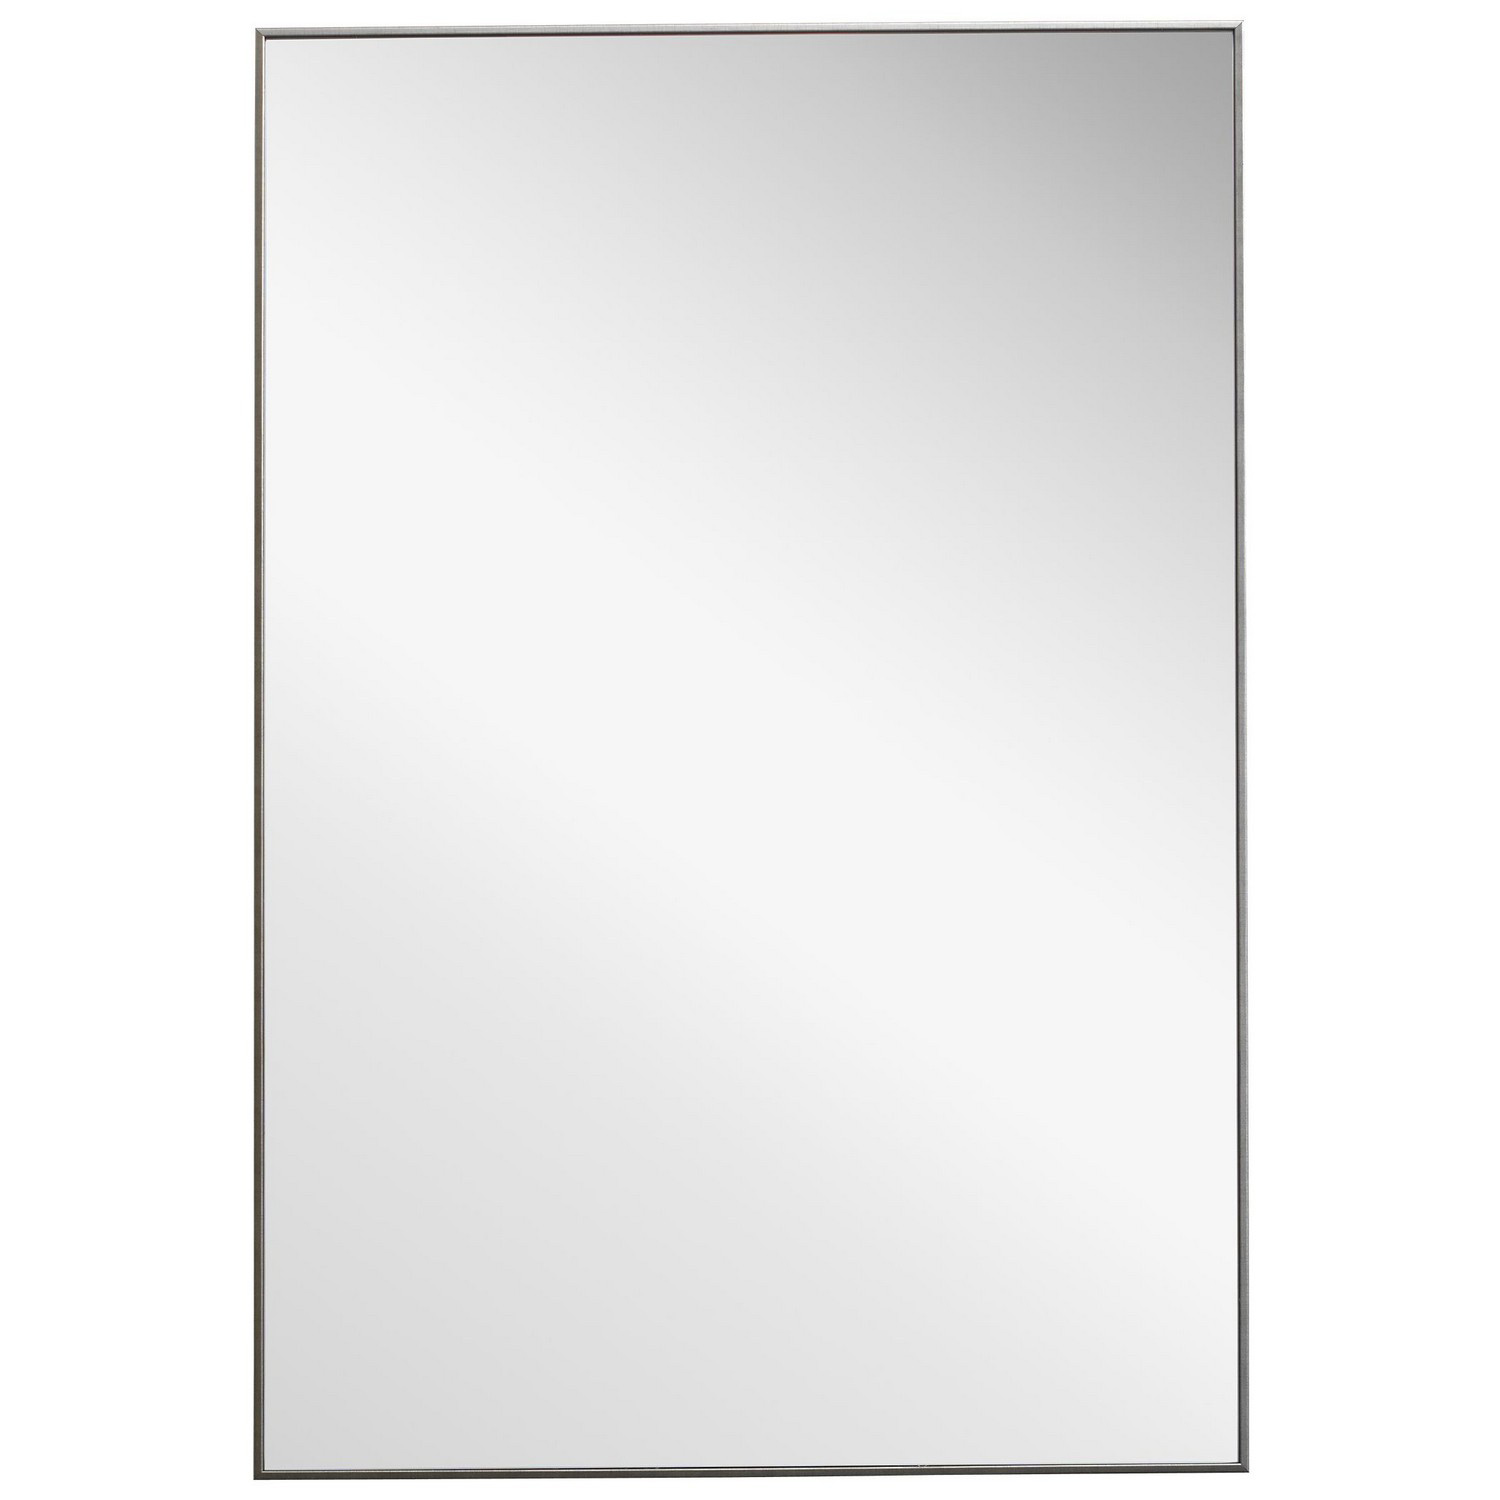 Uttermost W00501 Mirror - Silver